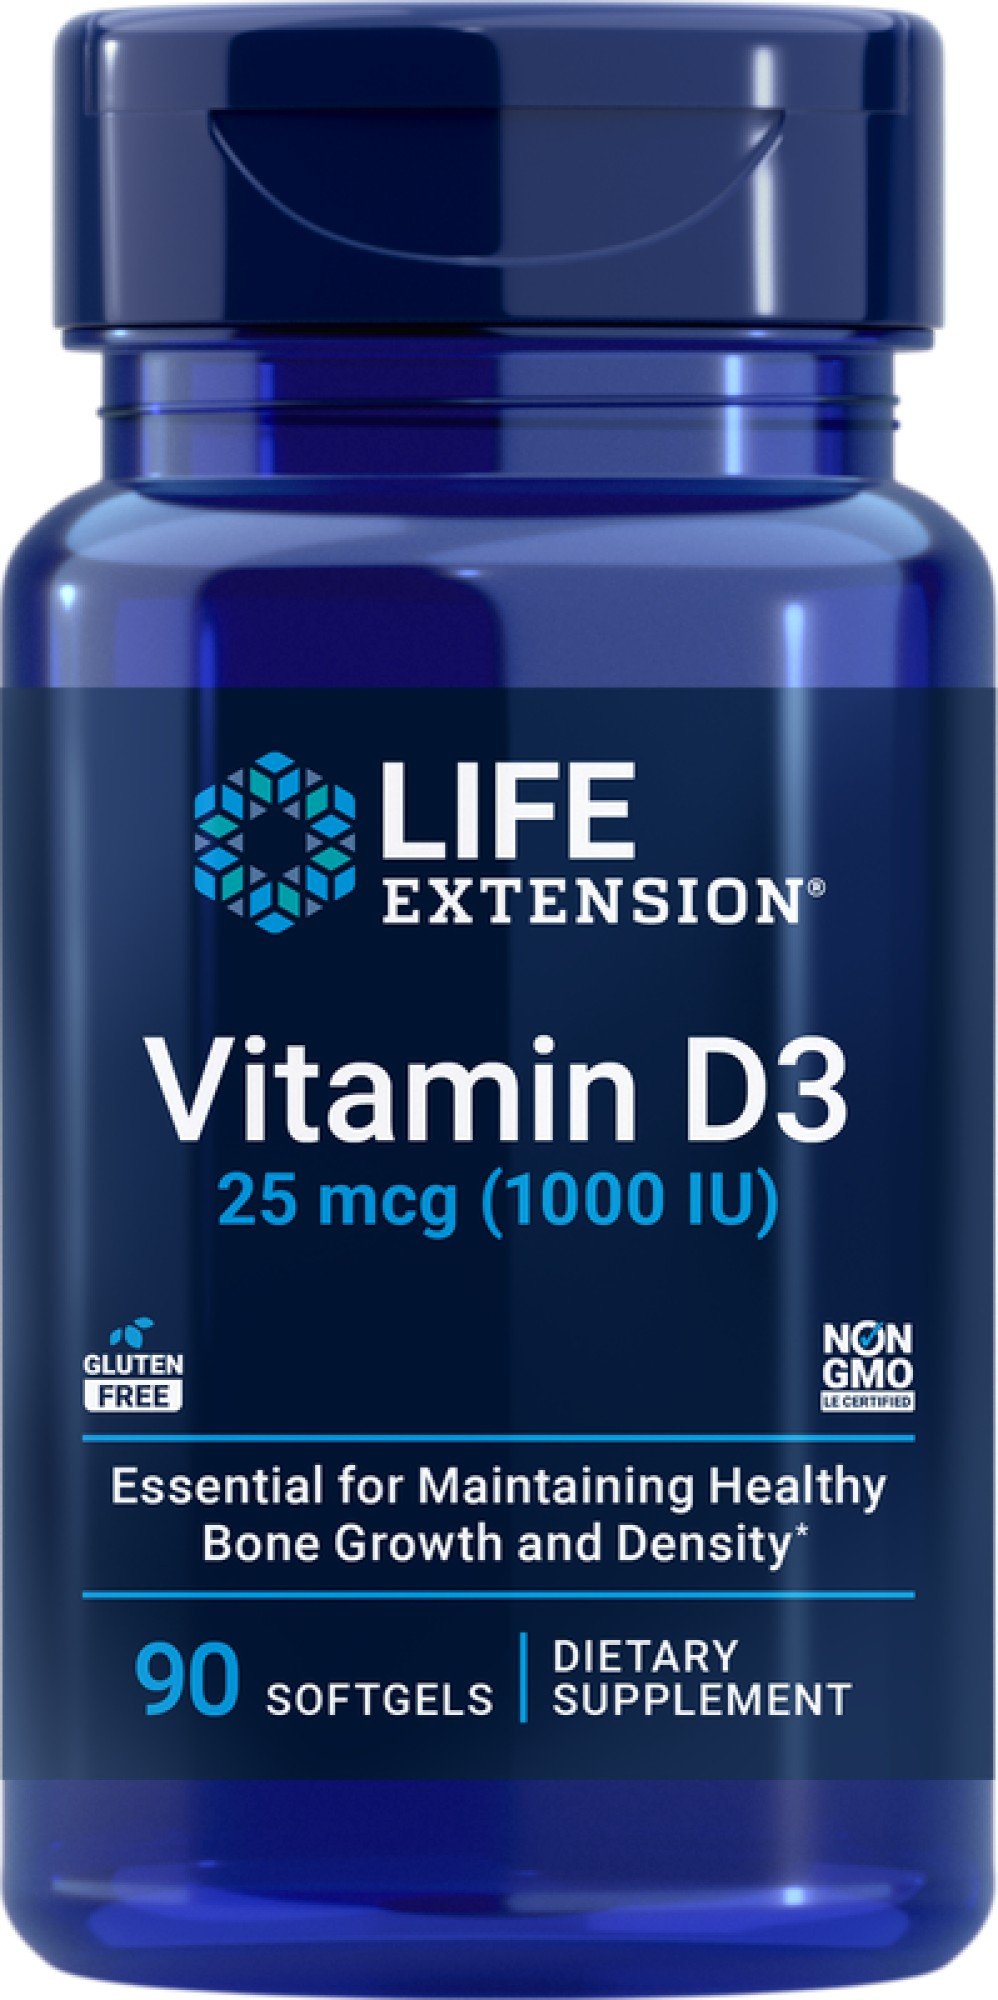 Life Extension Vitamin D3 25 mcg ( 1000 IU) 90 Softgel